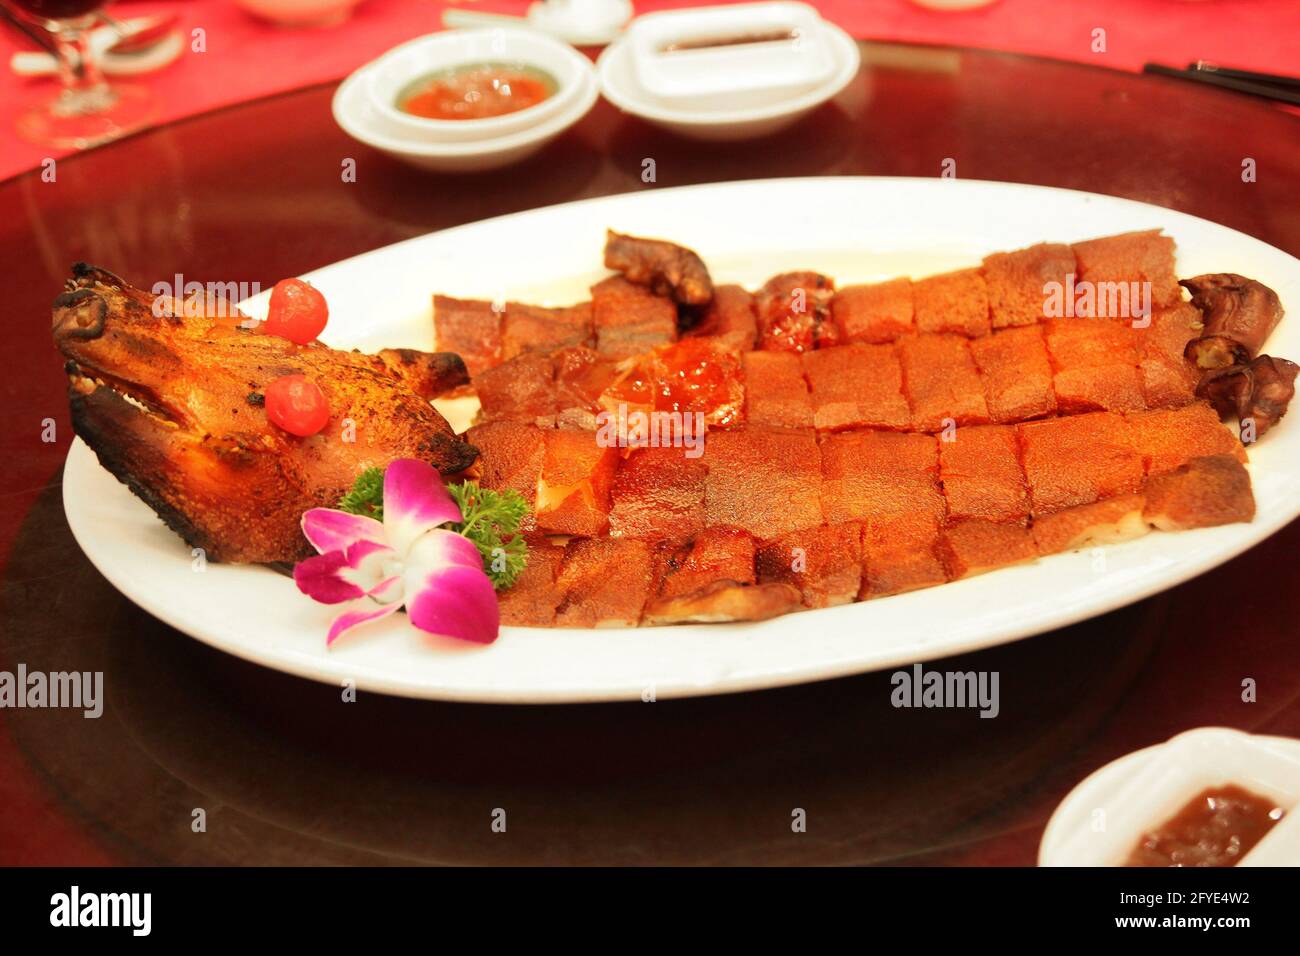 Cochon de lait traditionnel de Hong Kong grillé au barbecue typiquement servi lors d'un mariage chinois ou d'une occasion spéciale. Banque D'Images